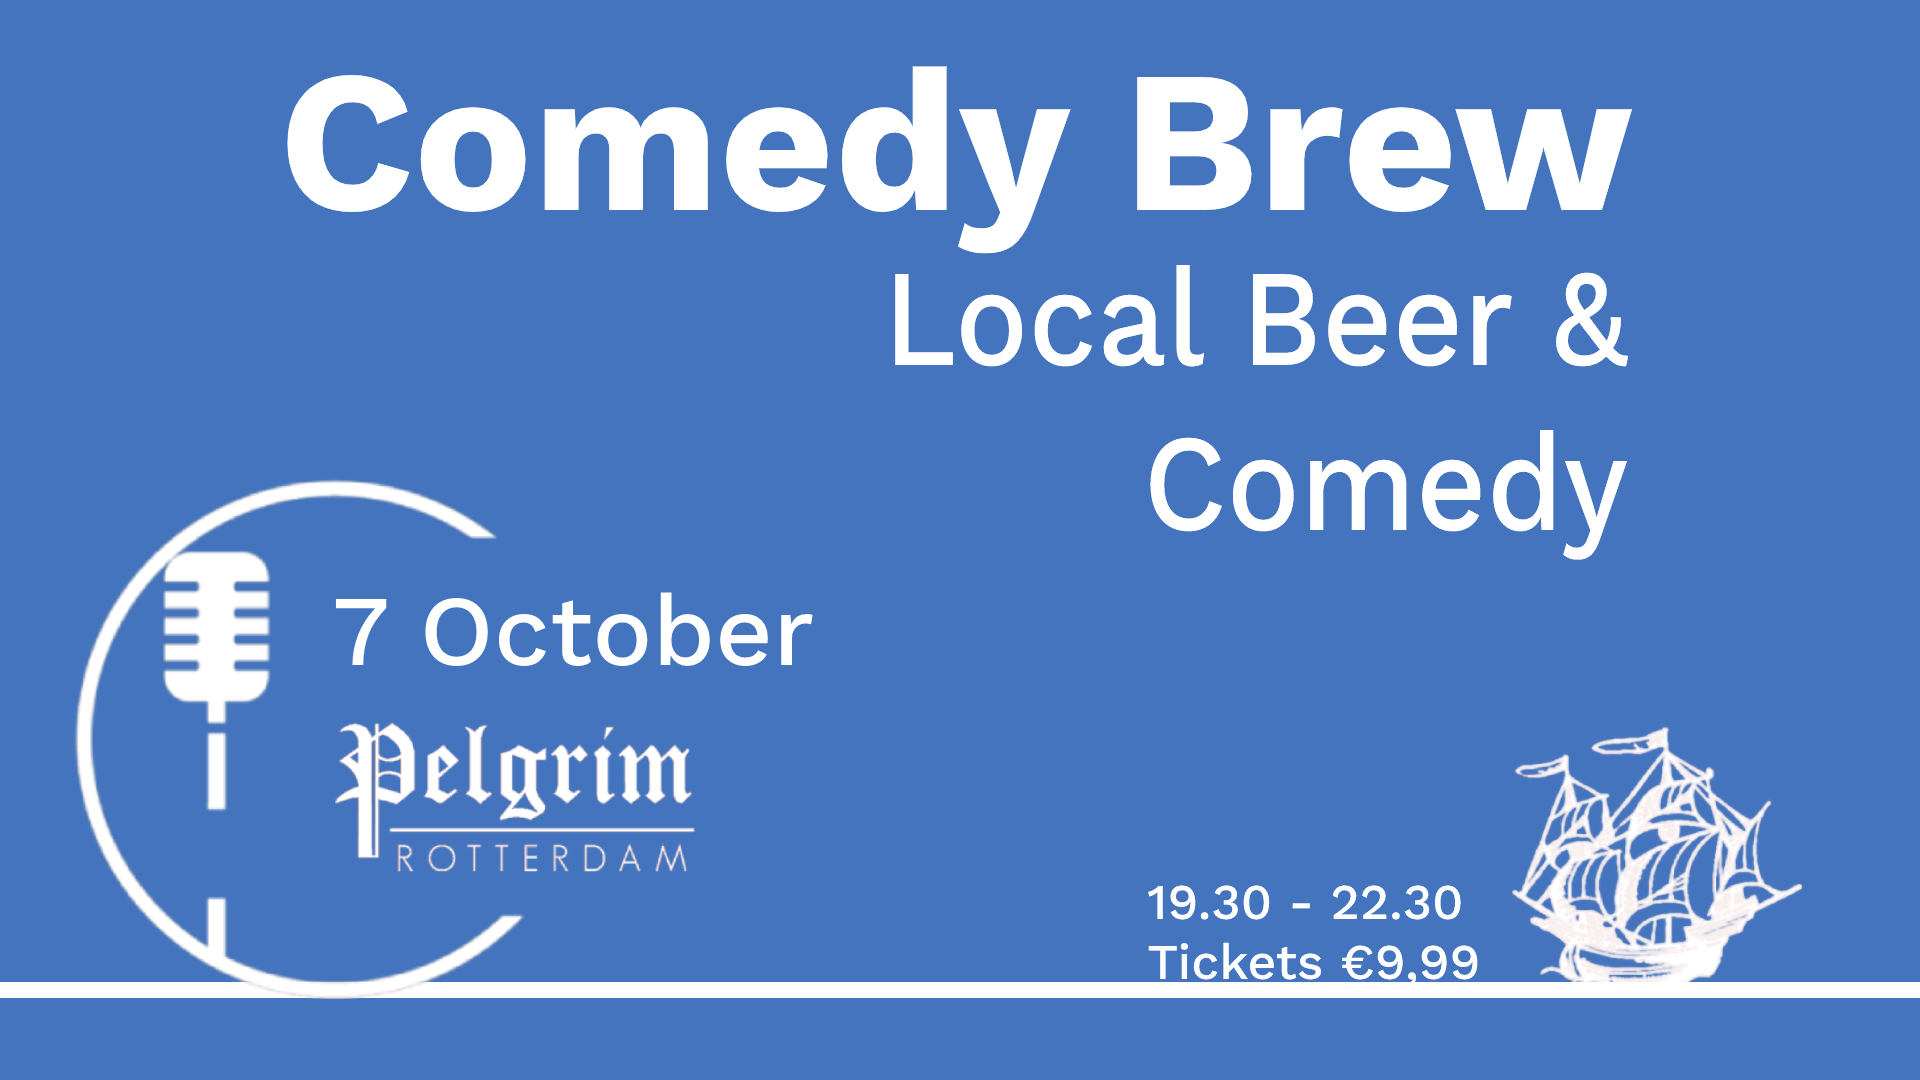 Ticket kopen voor evenement Comedy Brew